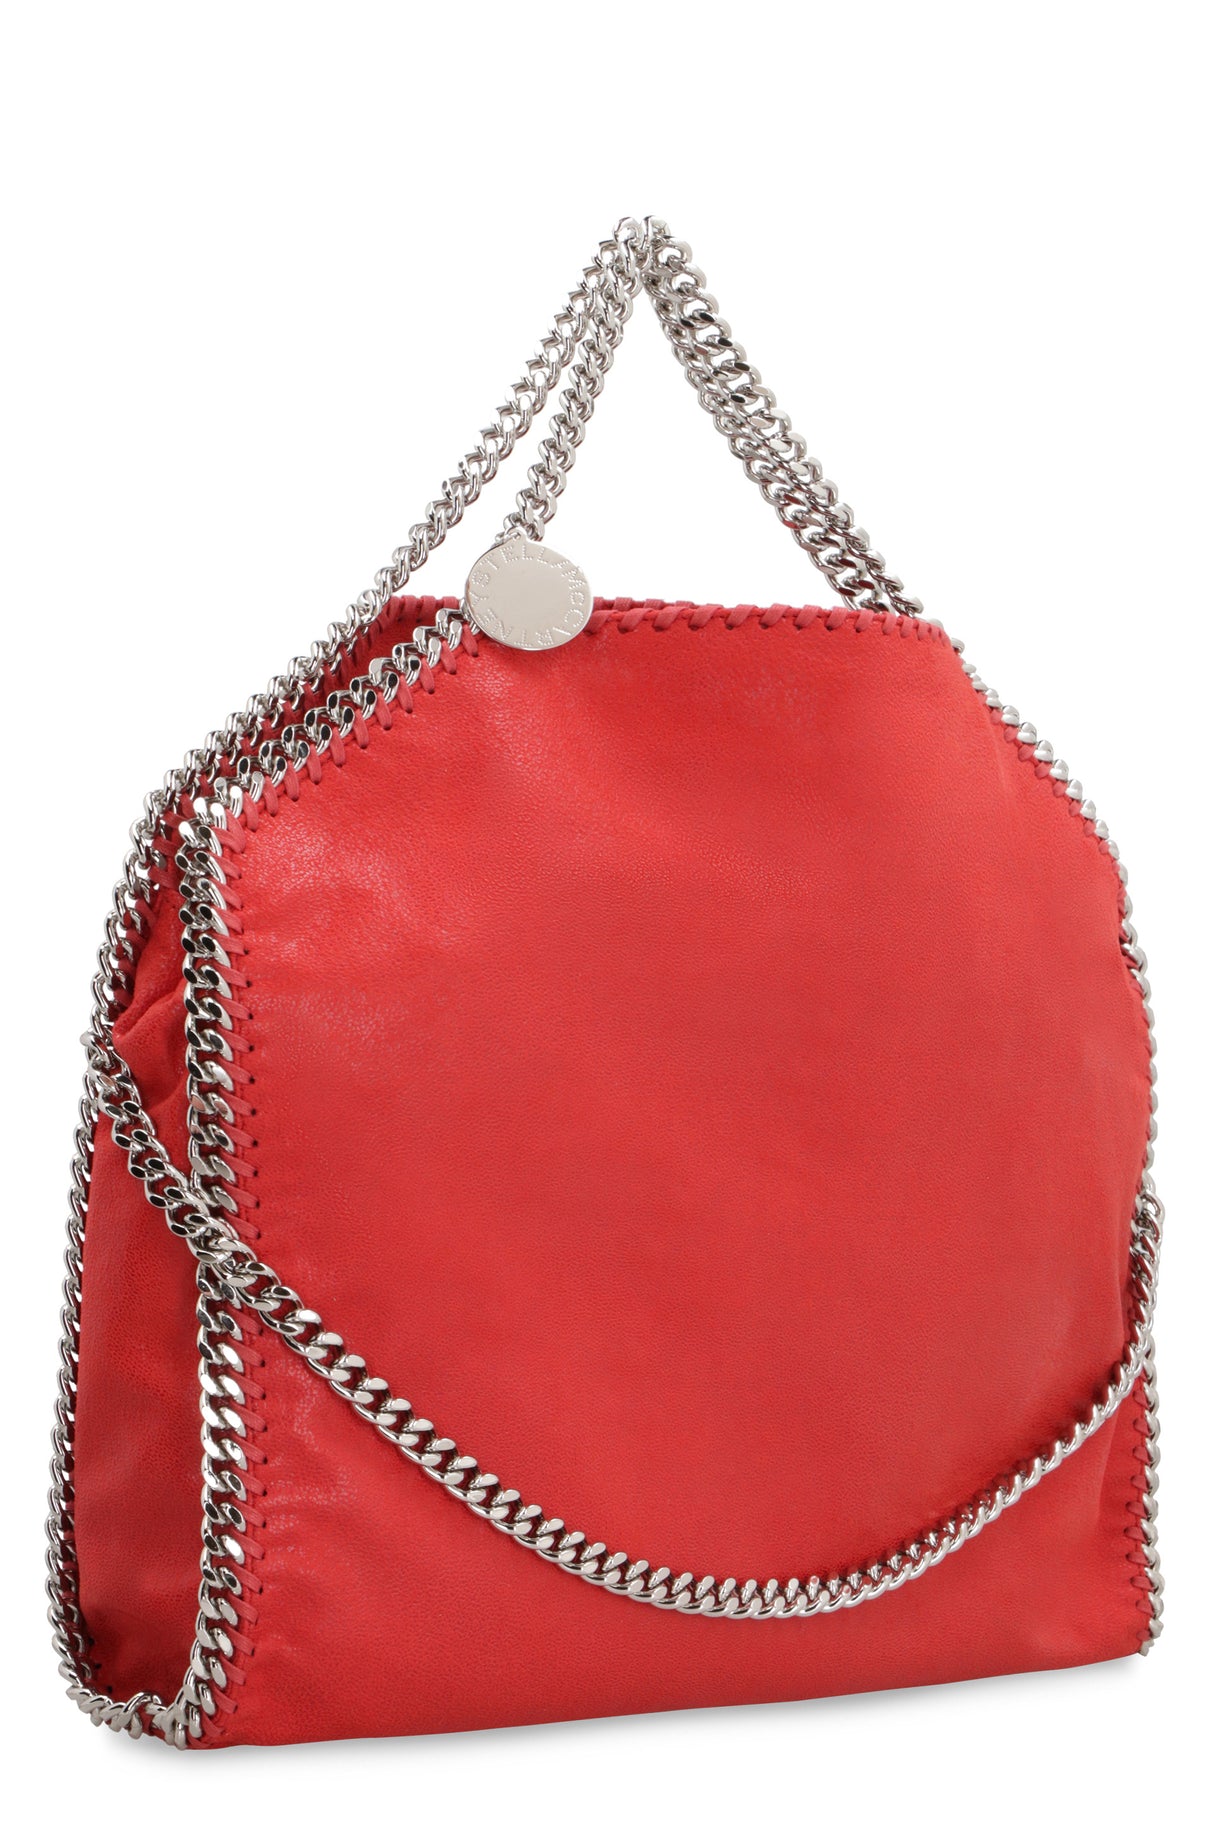 Túi đeo vai Stylish đỏ thời trang dành cho phụ nữ